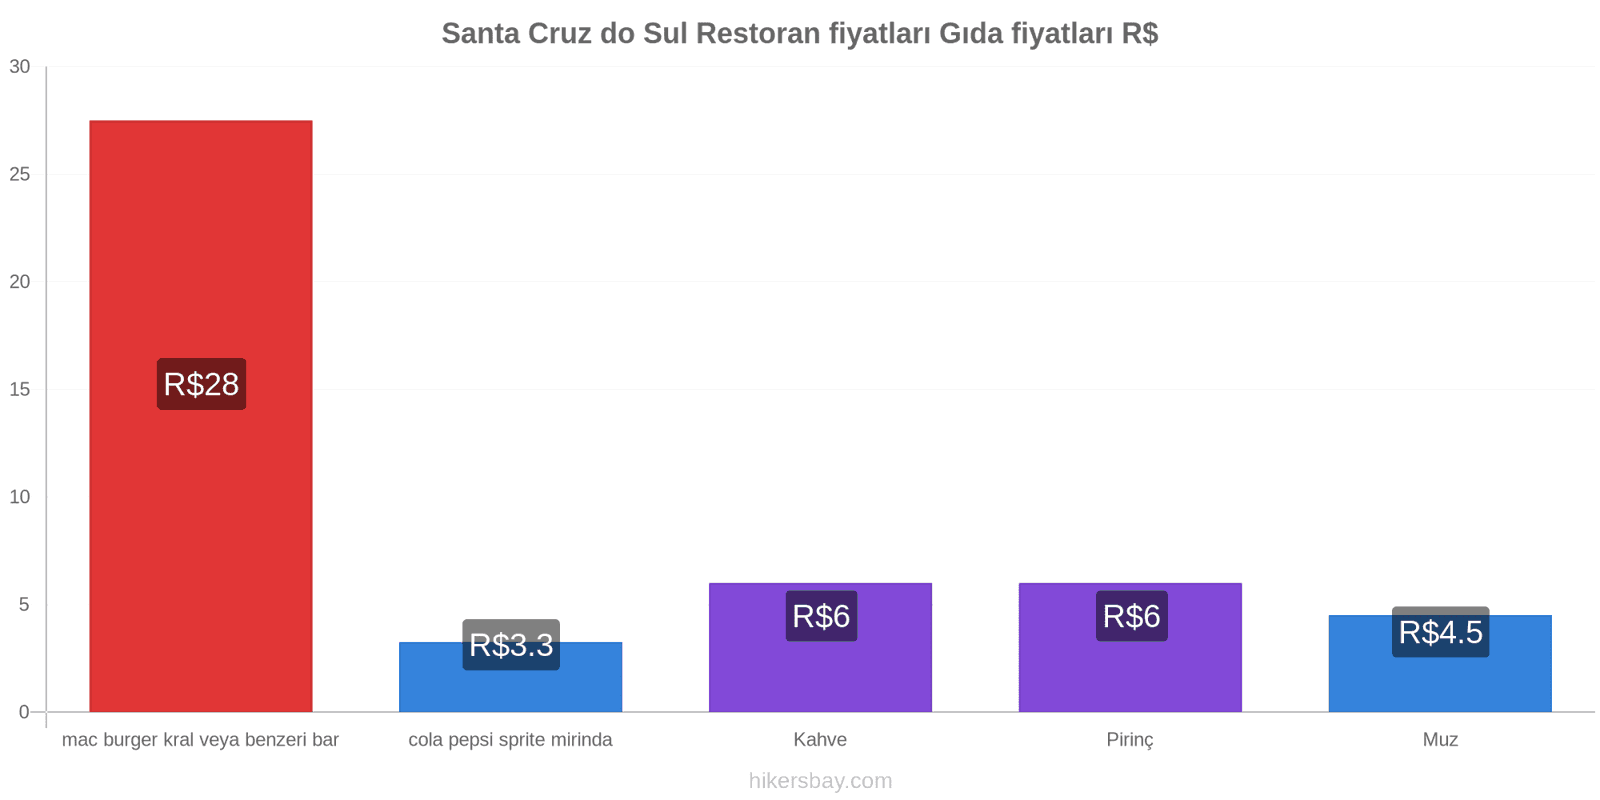 Santa Cruz do Sul fiyat değişiklikleri hikersbay.com